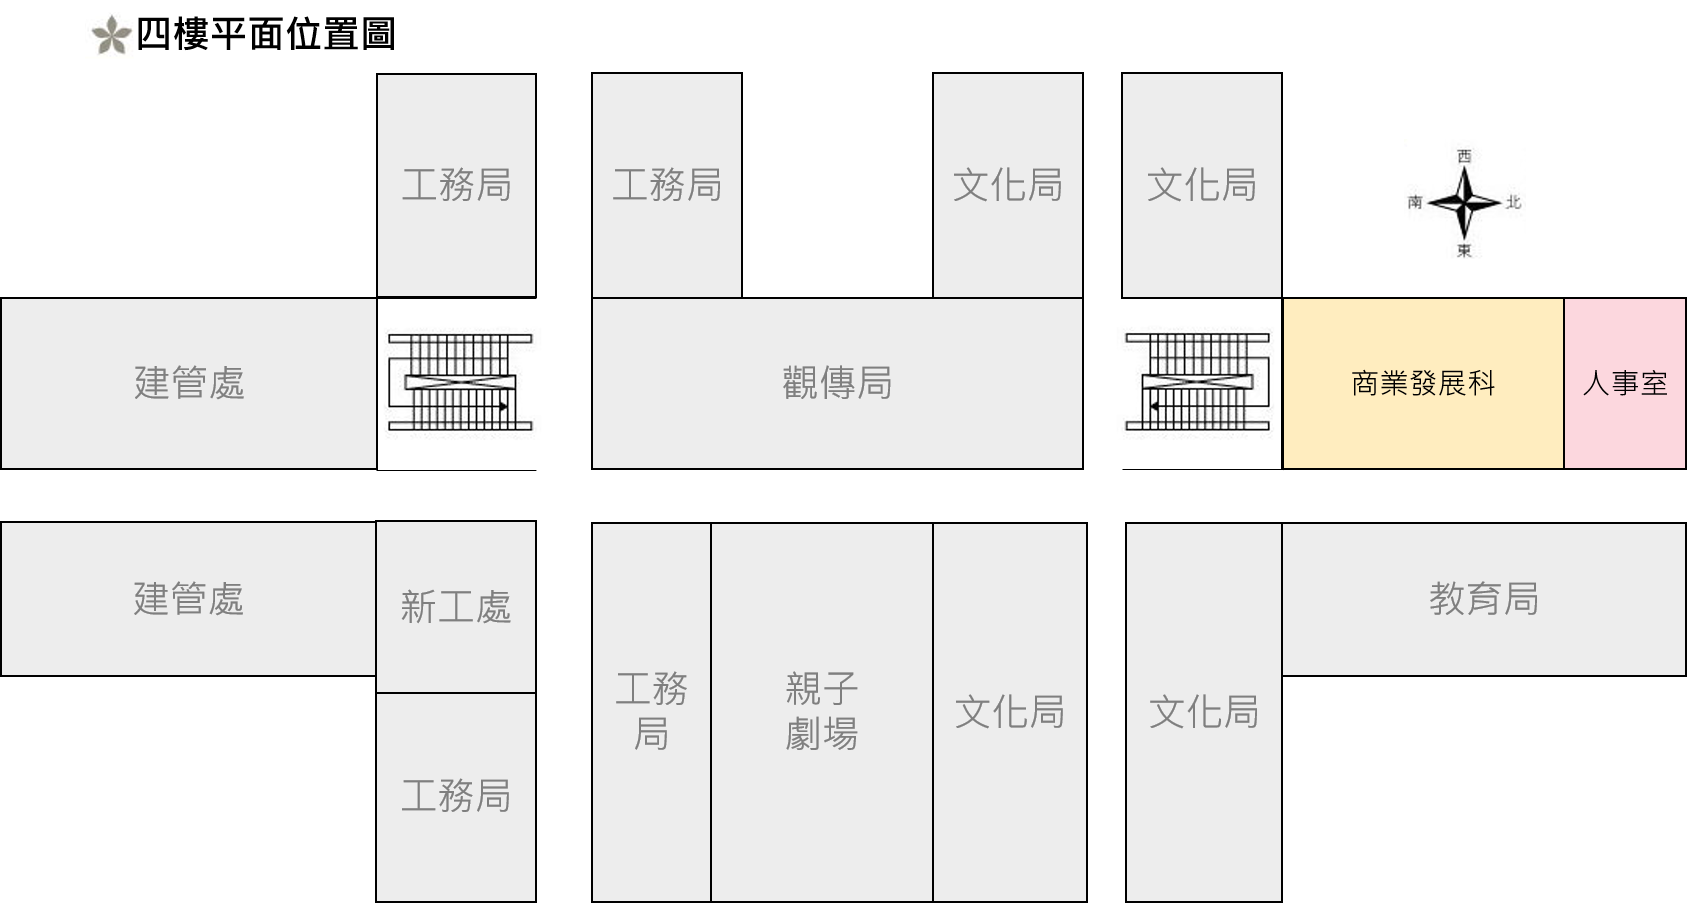 臺北市商業處四樓平面位置圖